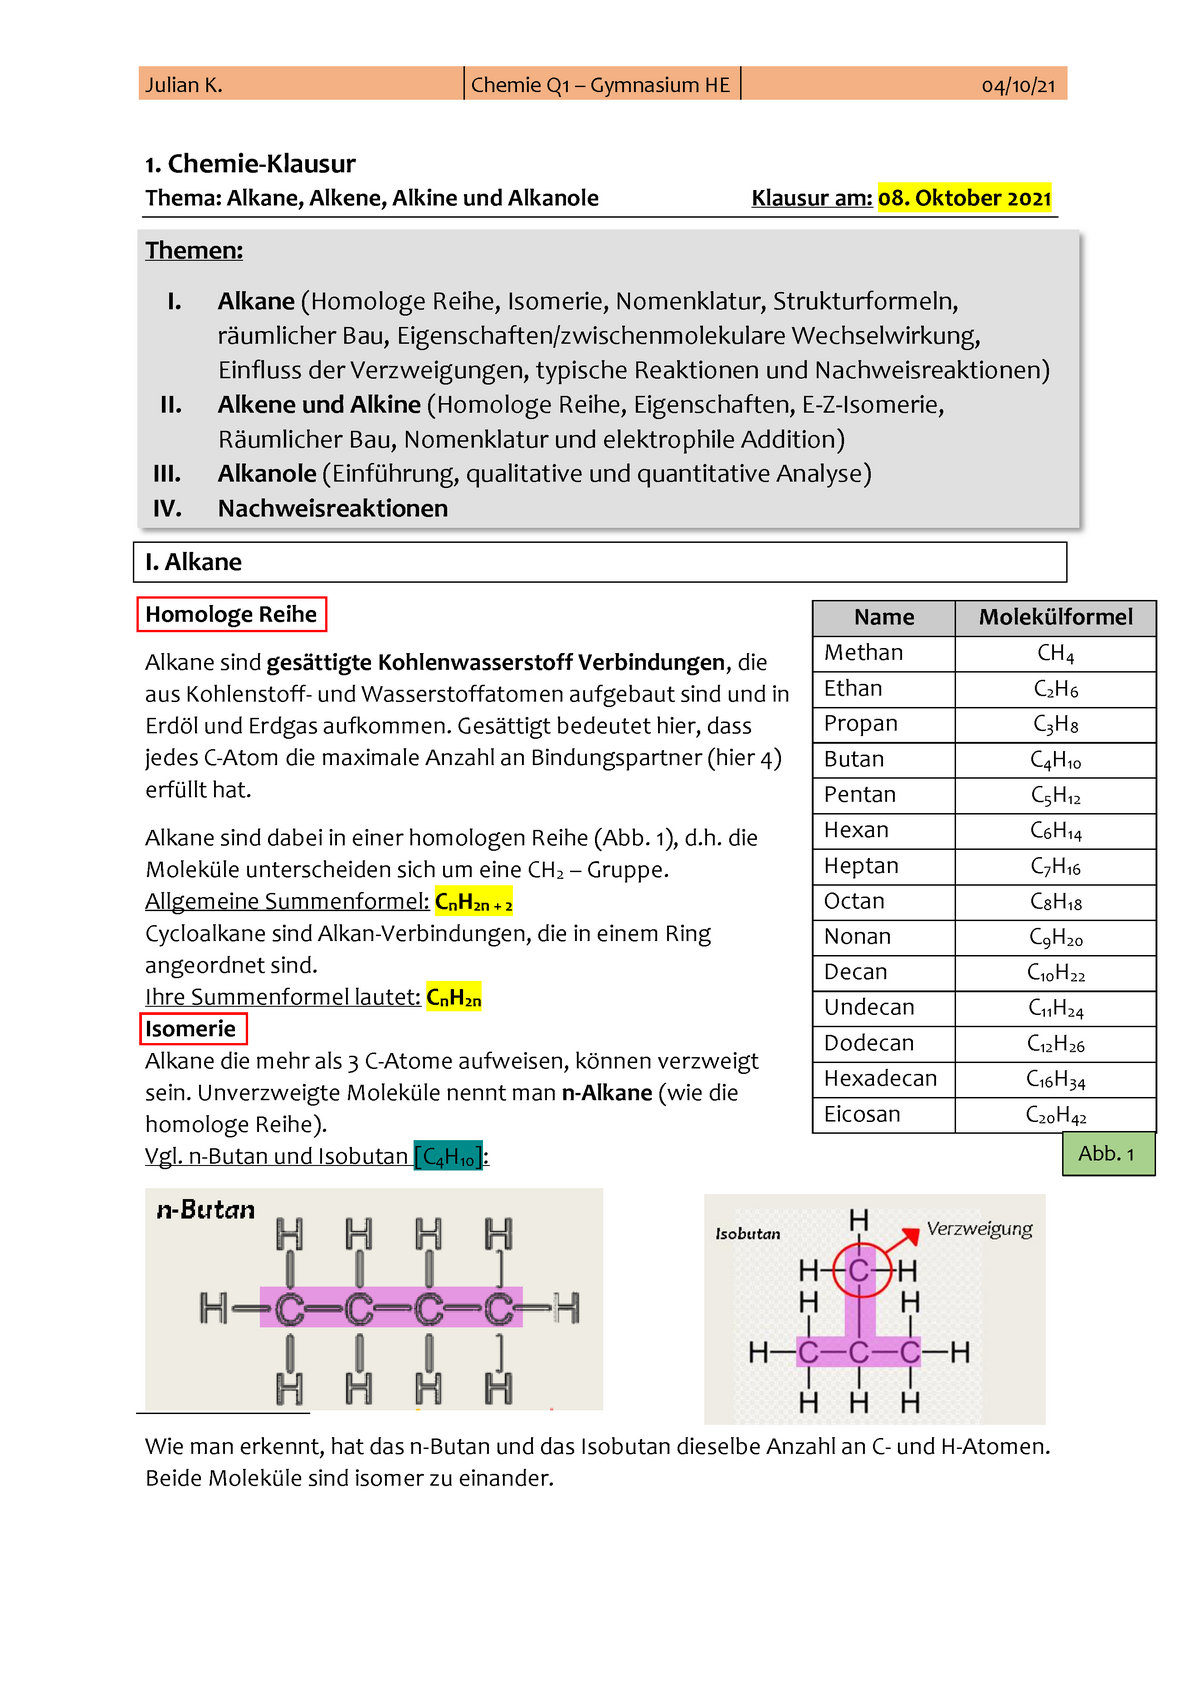 Alkane, Alkene und Alkine; Grundlegende Einführung in die ...